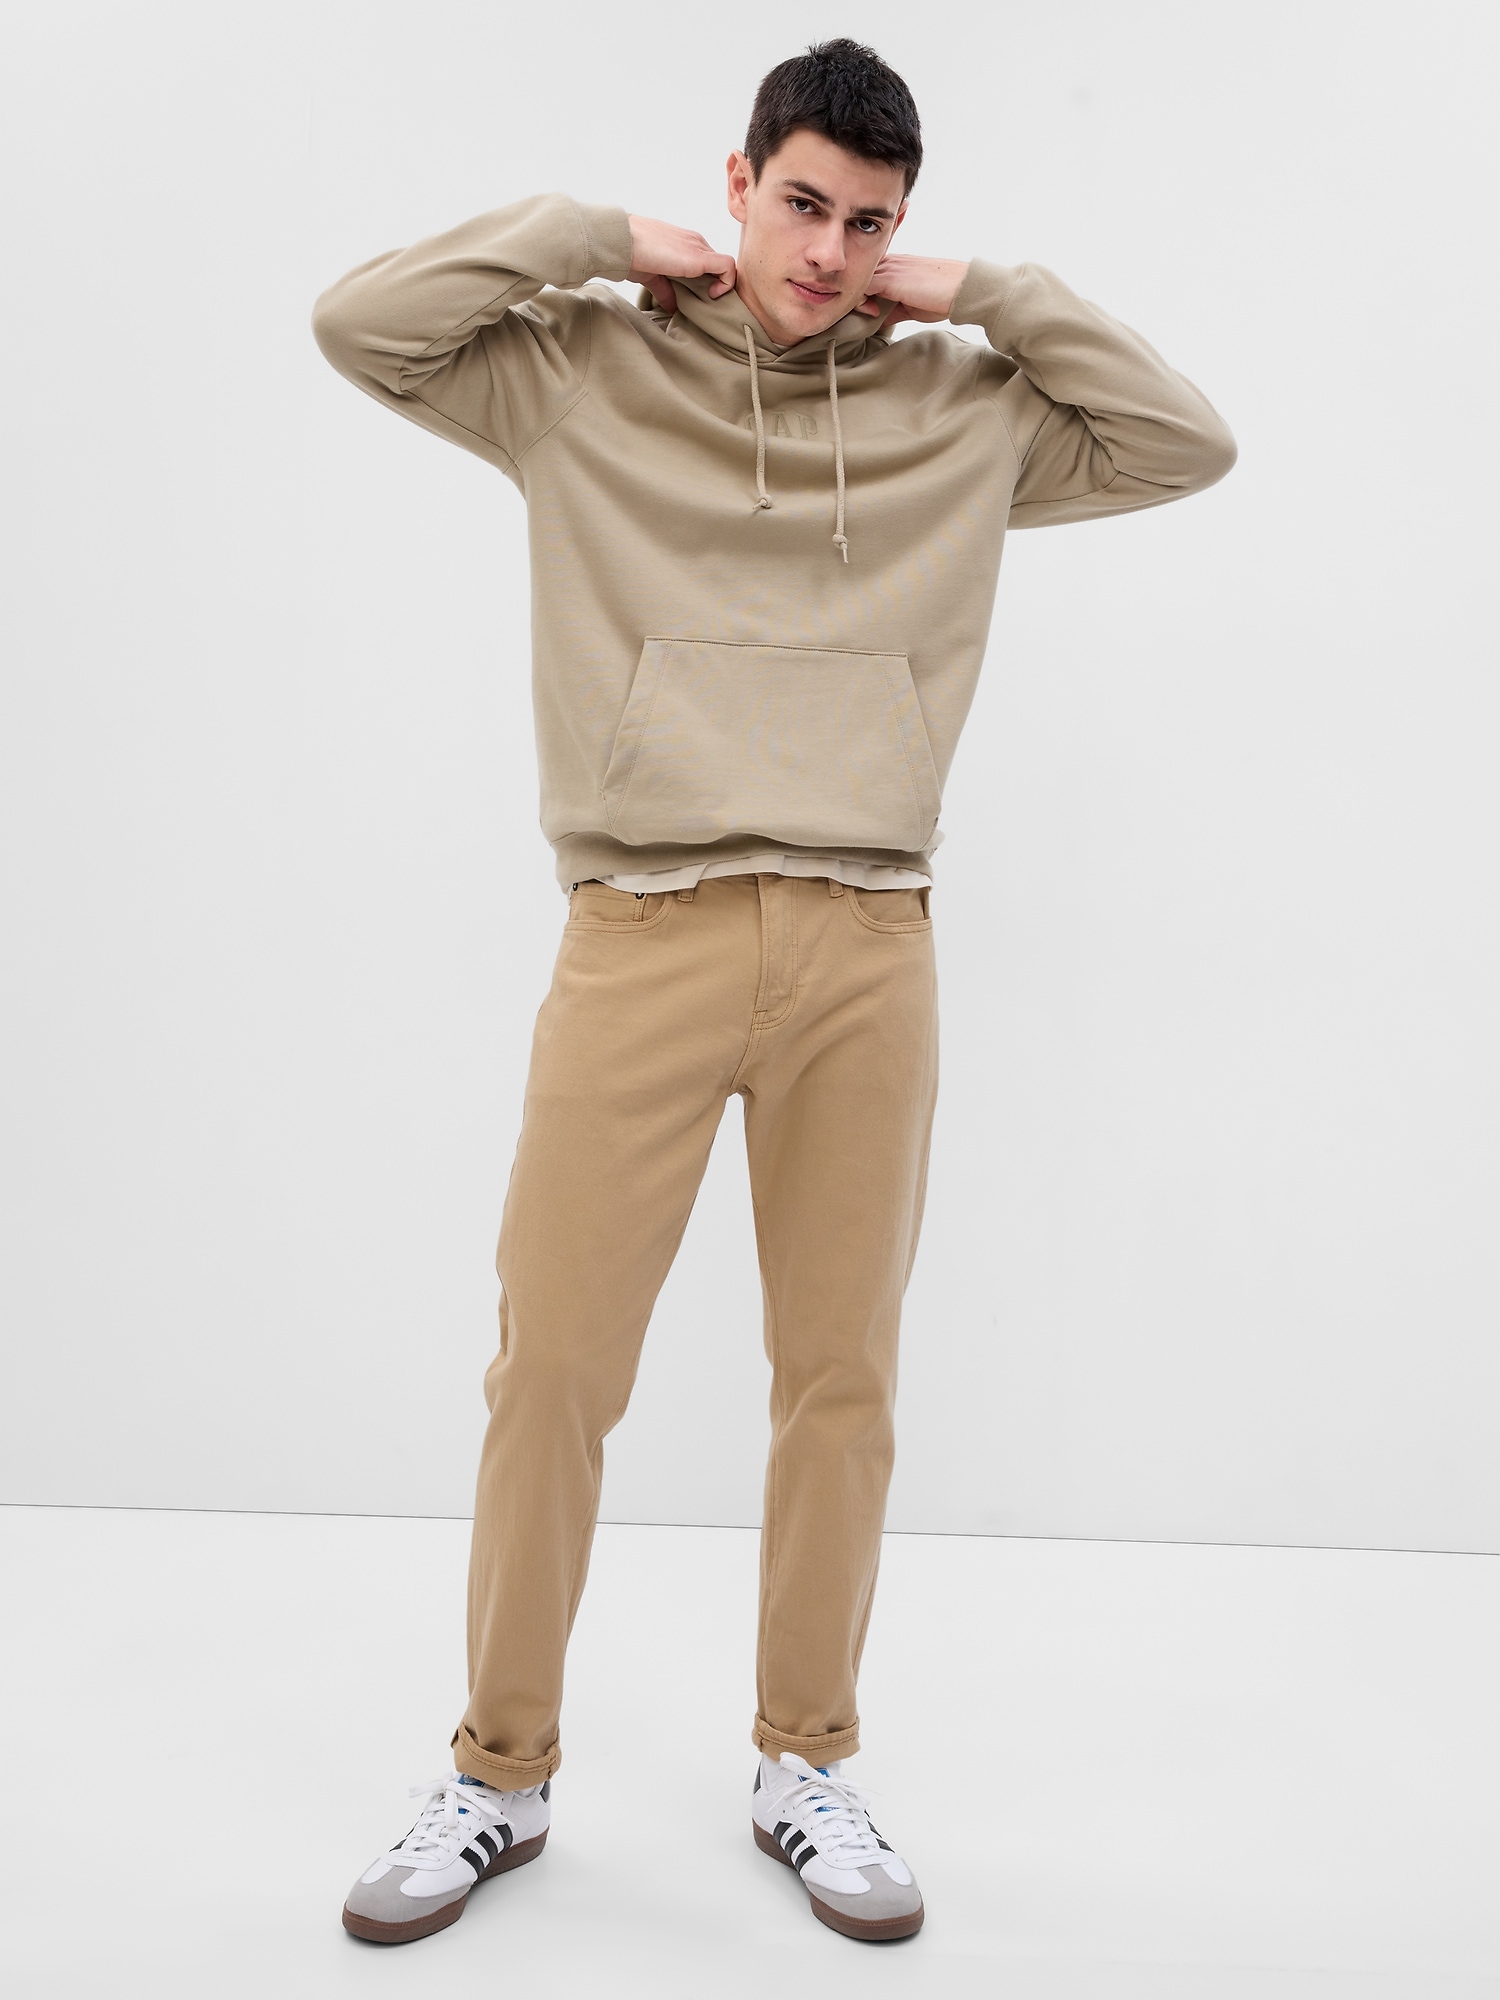 Gap Wearlight Slim Jeans With GapFlex Size 34 - AirRobe